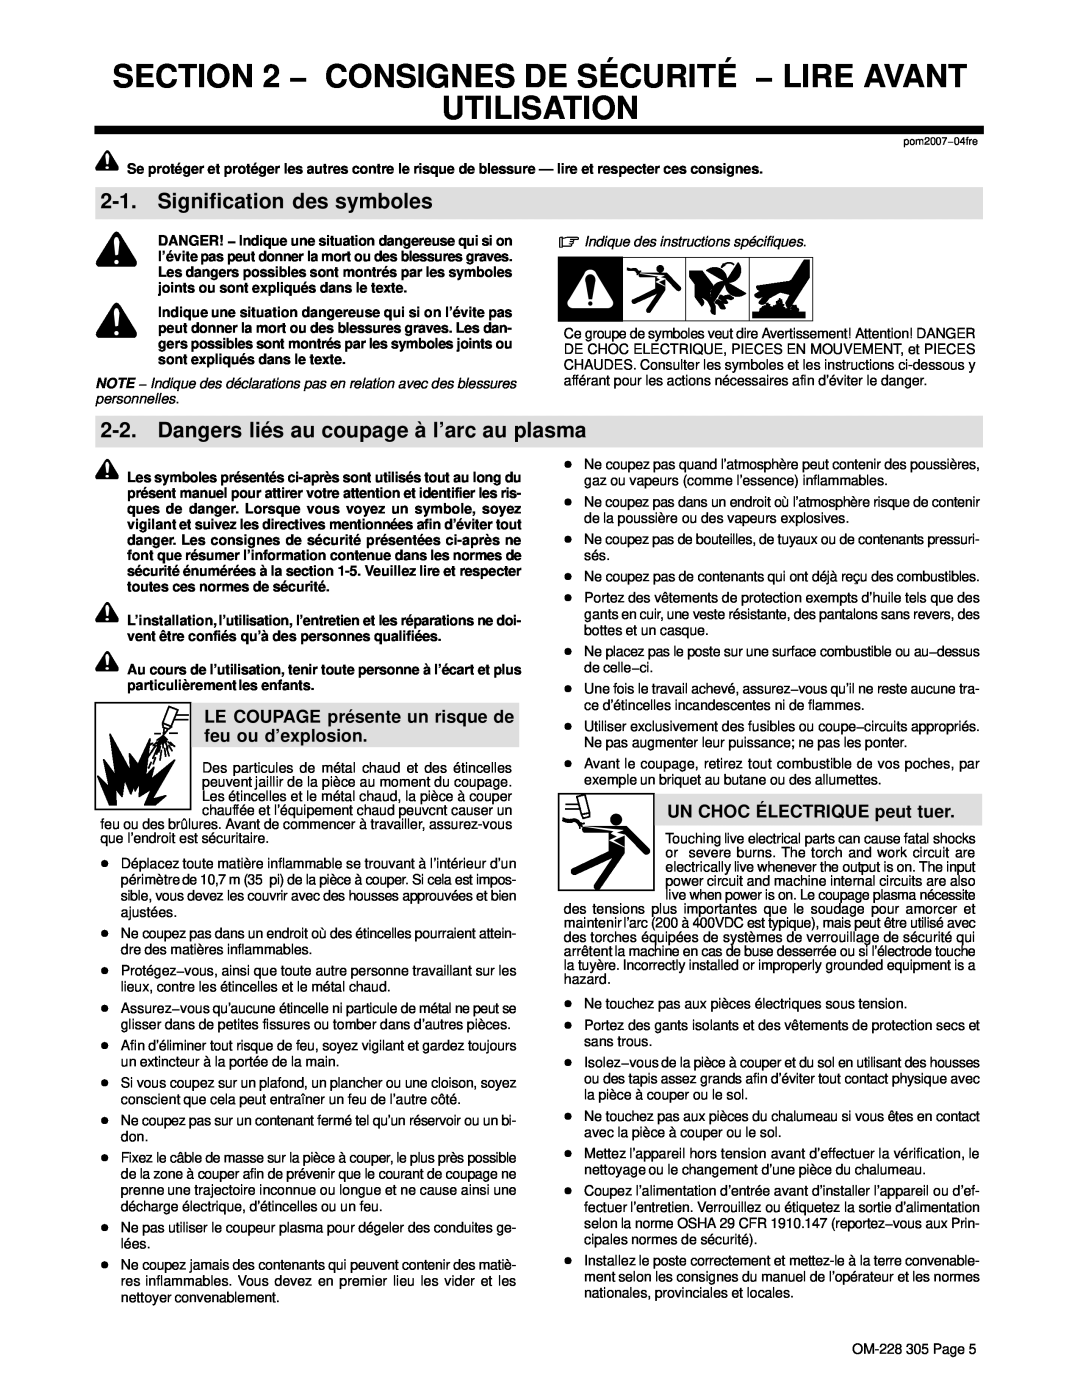 Miller Electric pmn warranty Consignes De Sécurité − Lire Avant Utilisation, Signification des symboles, personnelles 